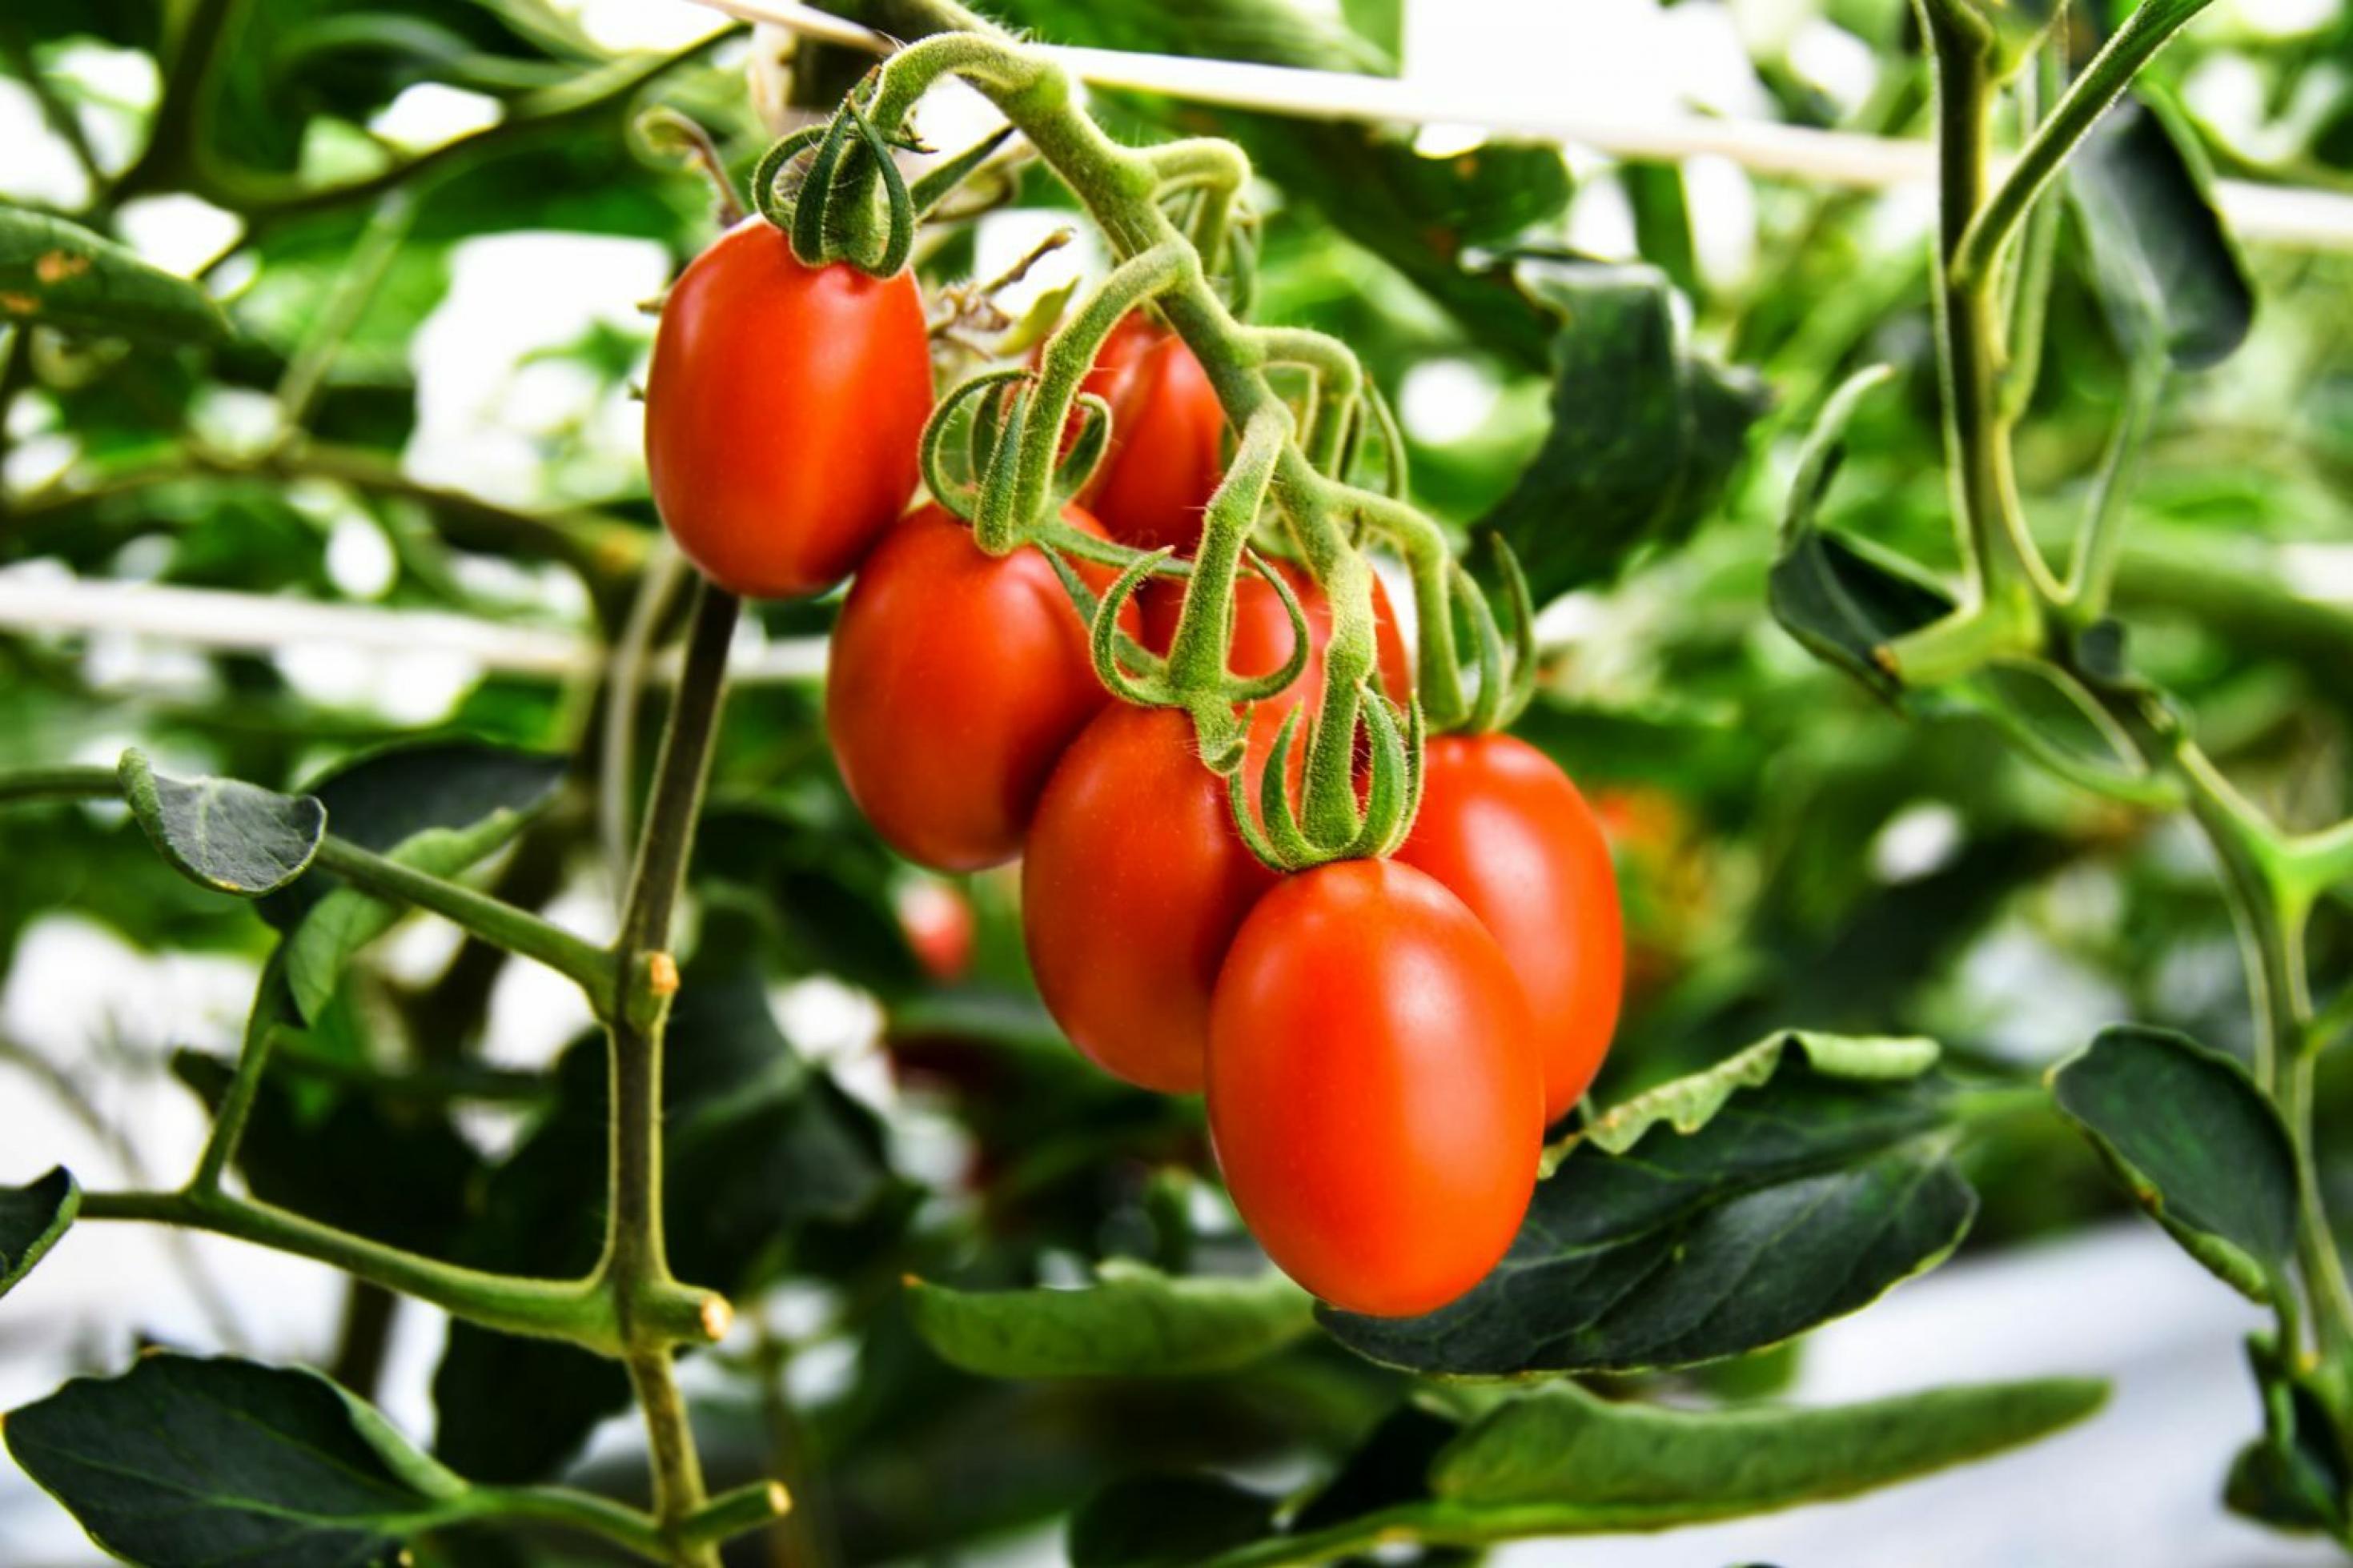 Äußerlich gewöhnliche Tomaten hängen an einem Strauch. Sie wurden mit Gentechnik gezüchtet und senken den Blutdruck